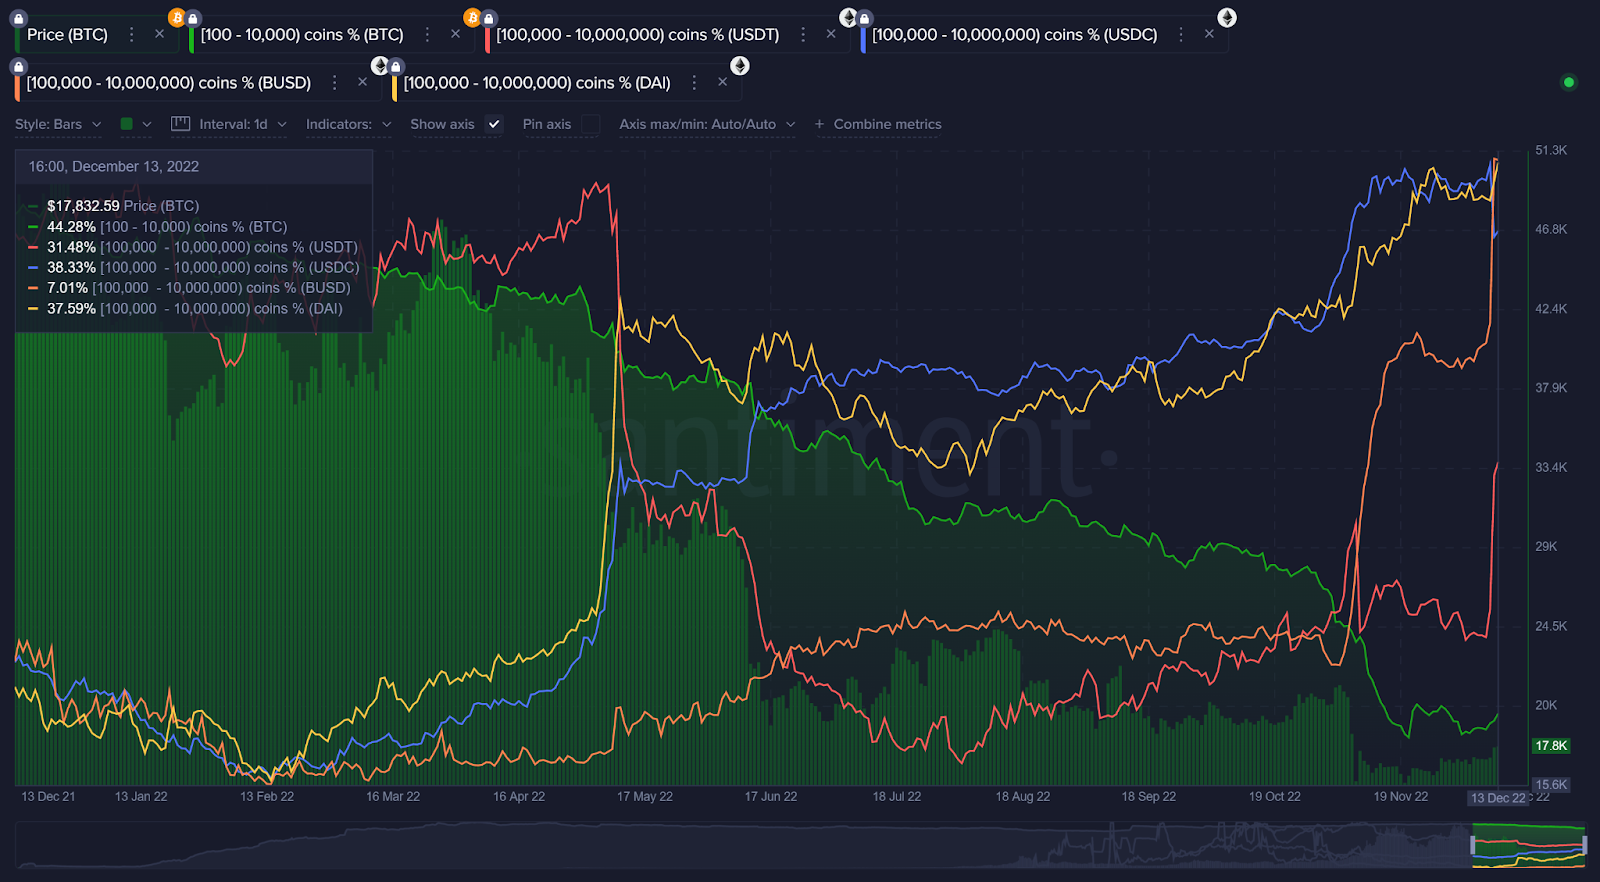 Balenele acumulează monede stabile? Ce înseamnă acest lucru pentru prețurile Bitcoin și Altcoin?